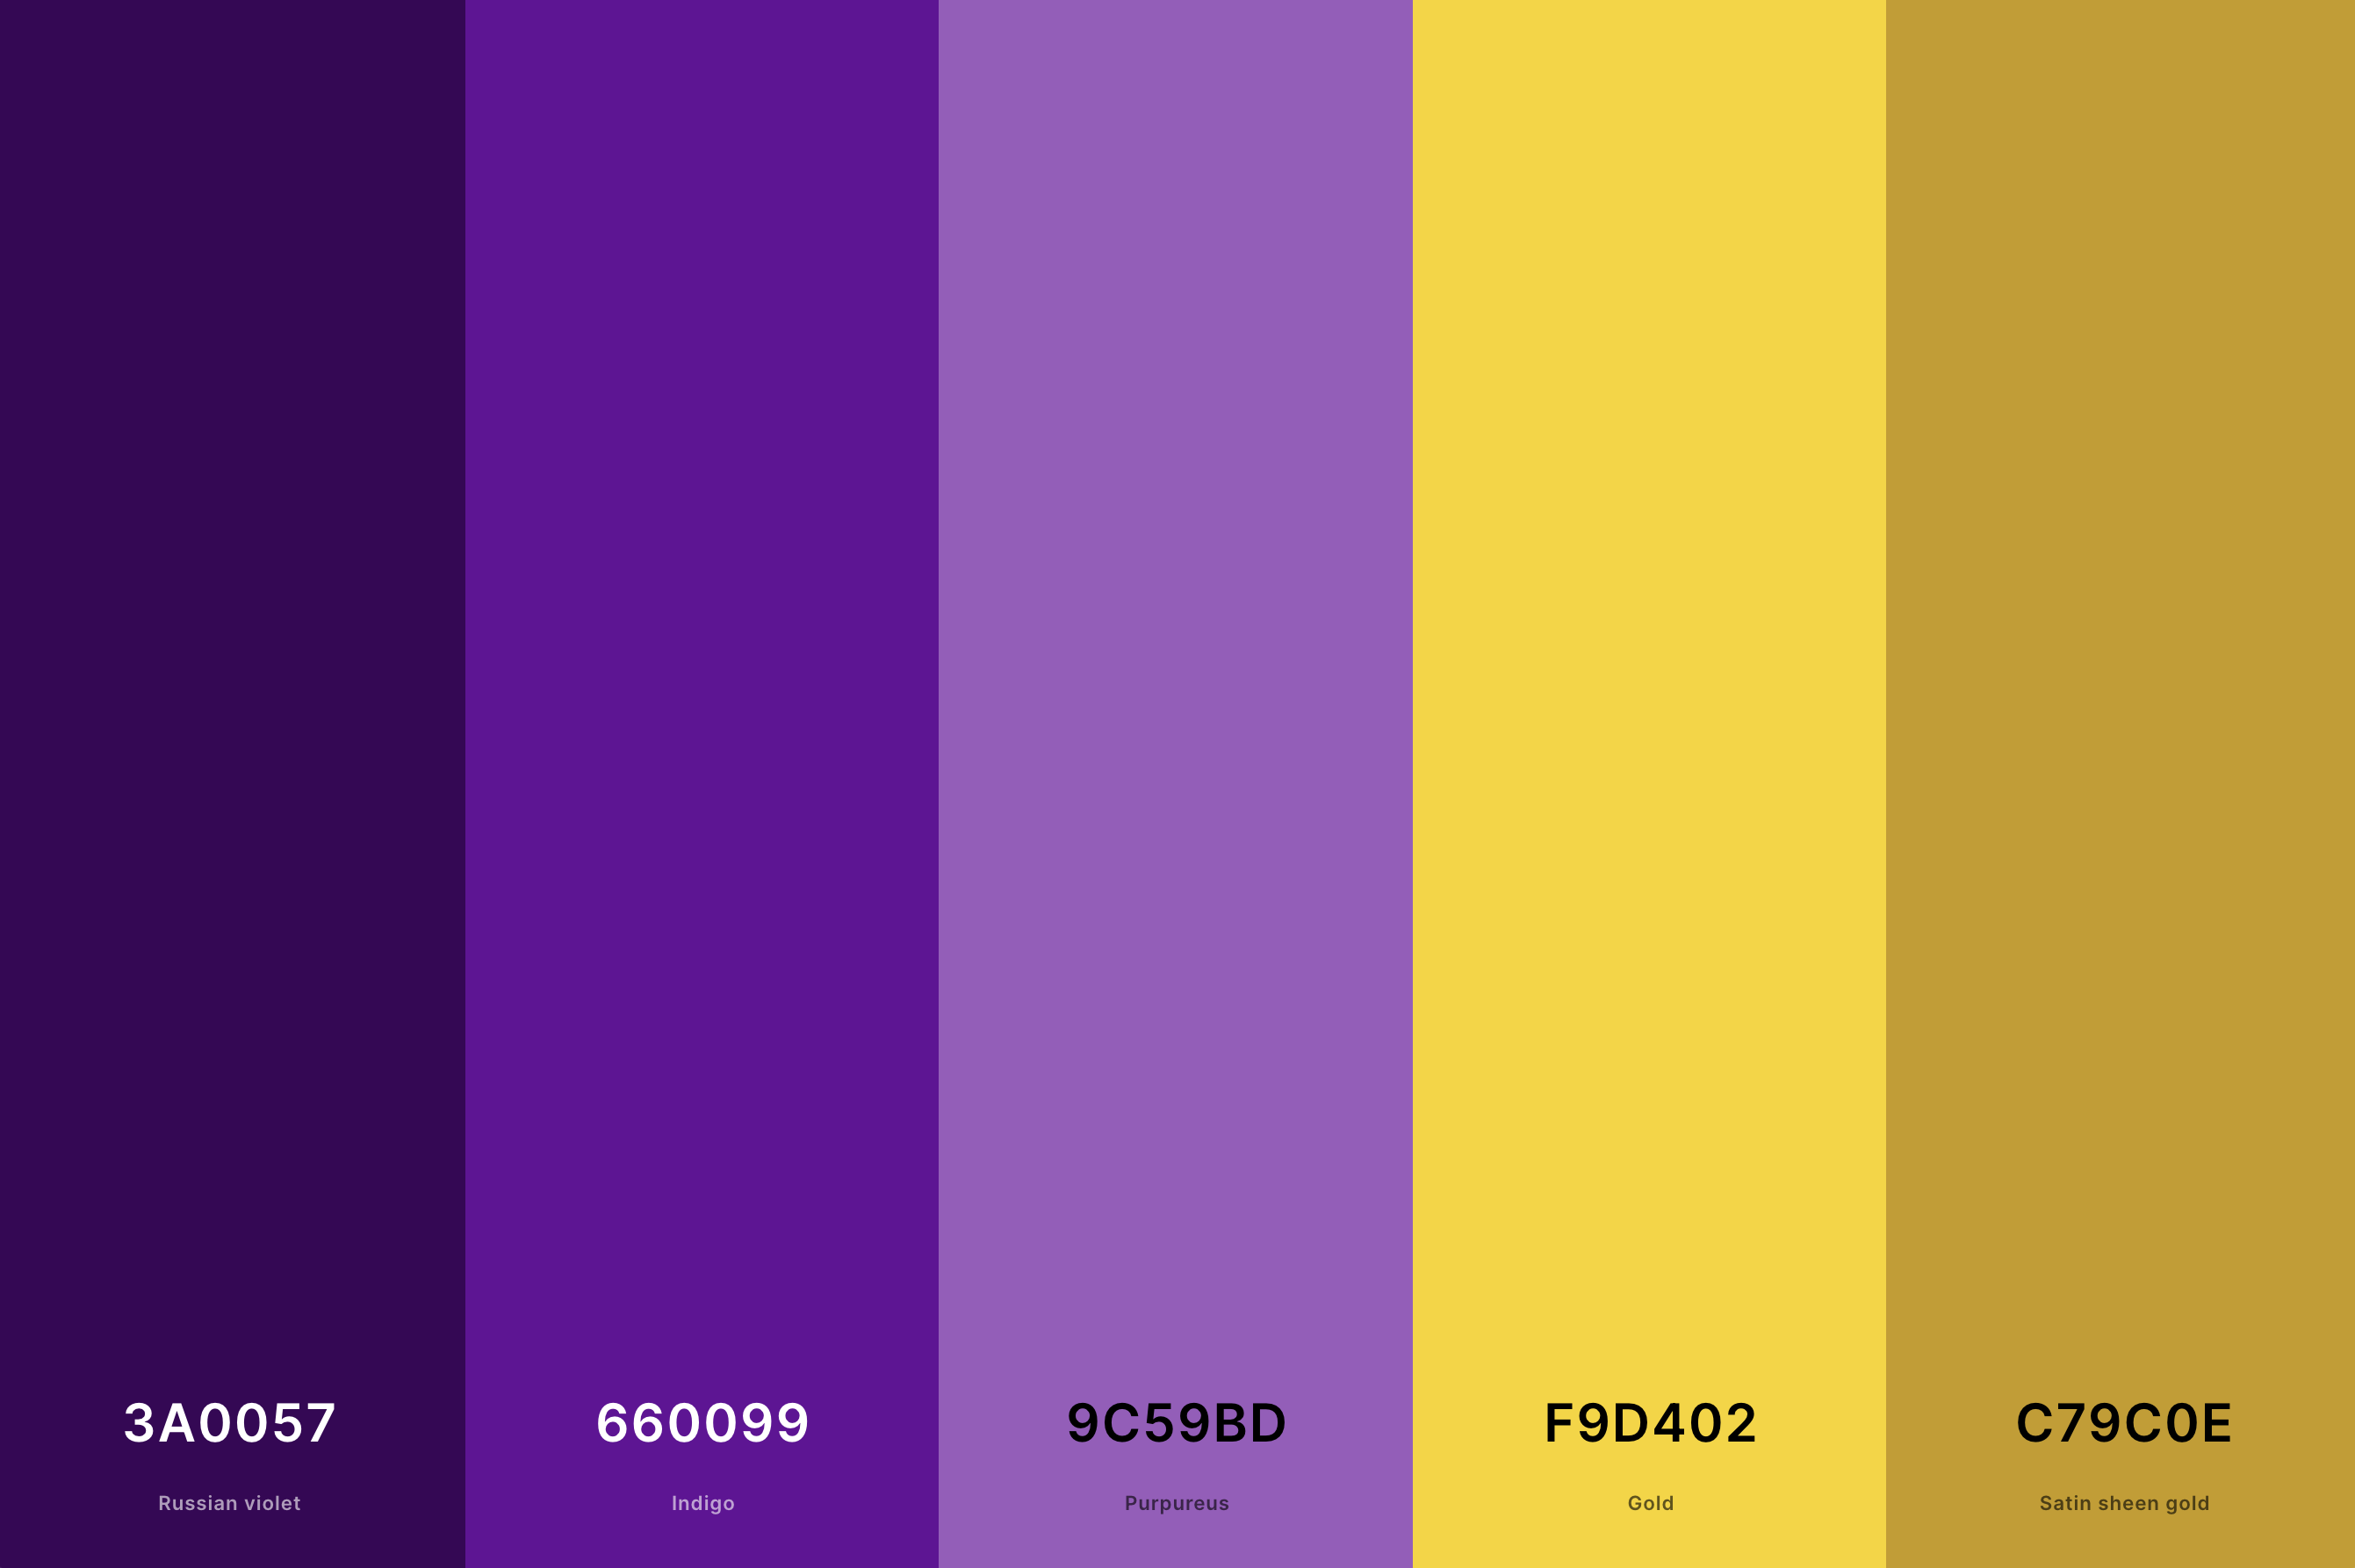 6. Purple And Gold Color Palette Color Palette with Russian Violet (Hex #3A0057) + Indigo (Hex #660099) + Purpureus (Hex #9C59BD) + Gold (Hex #F9D402) + Satin Sheen Gold (Hex #C79C0E) Color Palette with Hex Codes